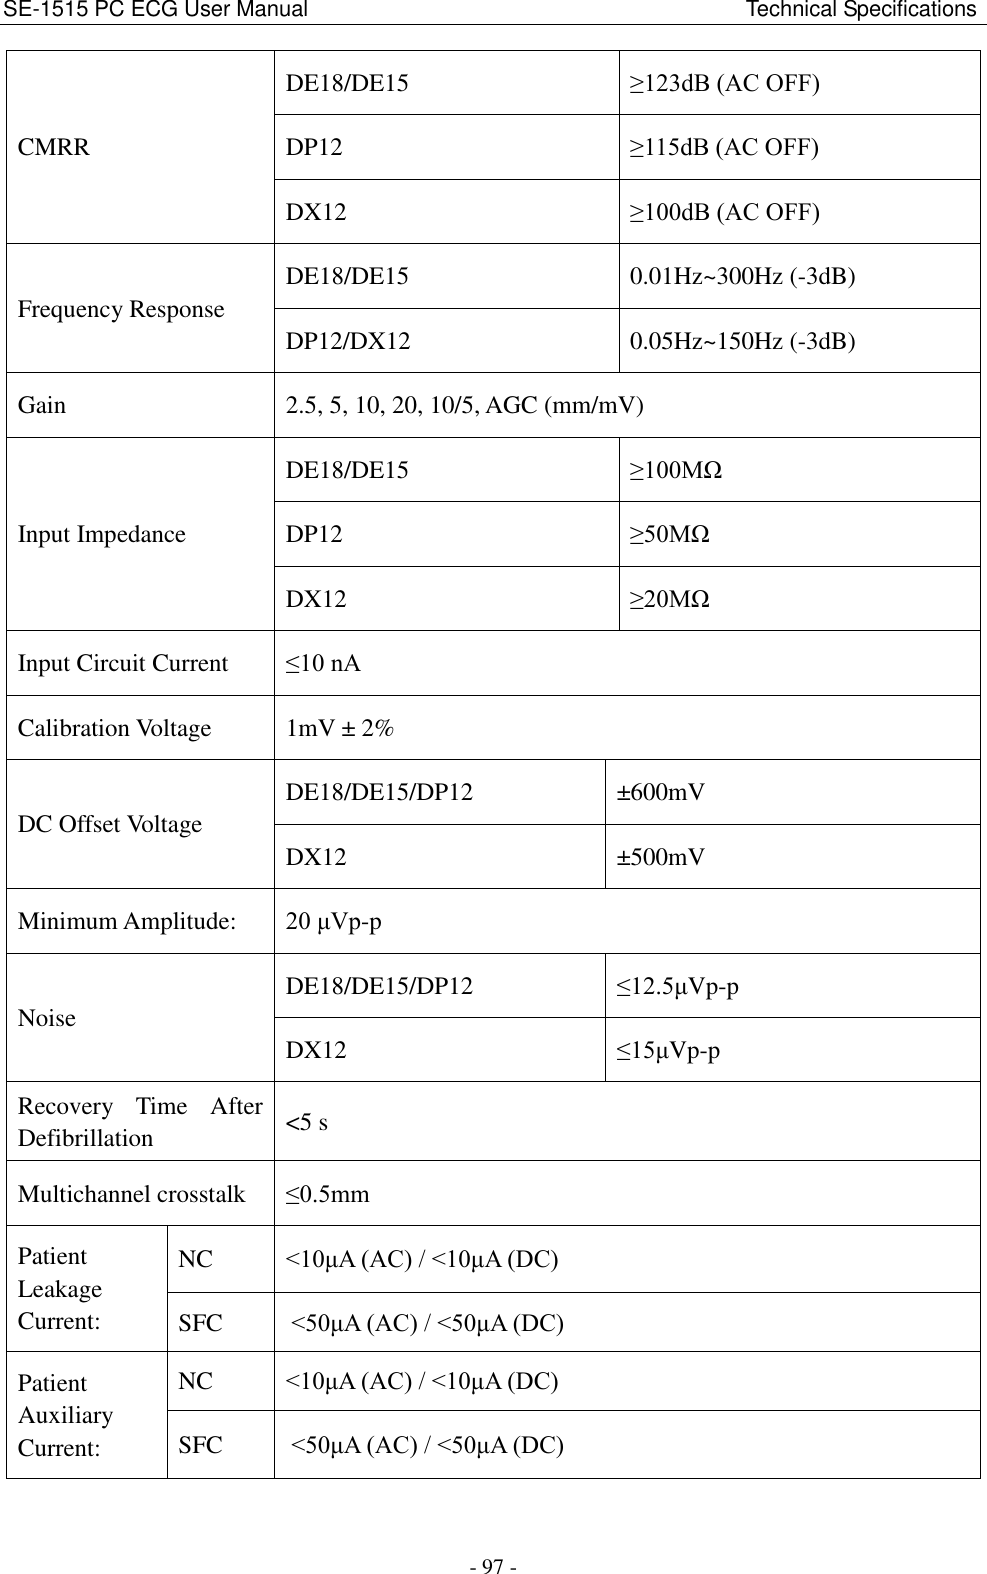 SE-1515 PC ECG User Manual                                                                                Technical Specifications - 97 - CMRR DE18/DE15 ≥123dB (AC OFF)   DP12 ≥115dB (AC OFF)   DX12 ≥100dB (AC OFF)   Frequency Response DE18/DE15 0.01Hz~300Hz (-3dB) DP12/DX12 0.05Hz~150Hz (-3dB) Gain 2.5, 5, 10, 20, 10/5, AGC (mm/mV) Input Impedance DE18/DE15 ≥100MΩ DP12 ≥50MΩ DX12 ≥20MΩ Input Circuit Current ≤10 nA Calibration Voltage 1mV ± 2% DC Offset Voltage DE18/DE15/DP12 ±600mV DX12 ±500mV Minimum Amplitude:   20 μVp-p Noise DE18/DE15/DP12 ≤12.5μVp-p DX12 ≤15μVp-p Recovery  Time  After Defibrillation &lt;5 s Multichannel crosstalk ≤0.5mm Patient Leakage Current: NC &lt;10μA (AC) / &lt;10μA (DC) SFC &lt;50μA (AC) / &lt;50μA (DC) Patient Auxiliary Current: NC &lt;10μA (AC) / &lt;10μA (DC) SFC &lt;50μA (AC) / &lt;50μA (DC) 